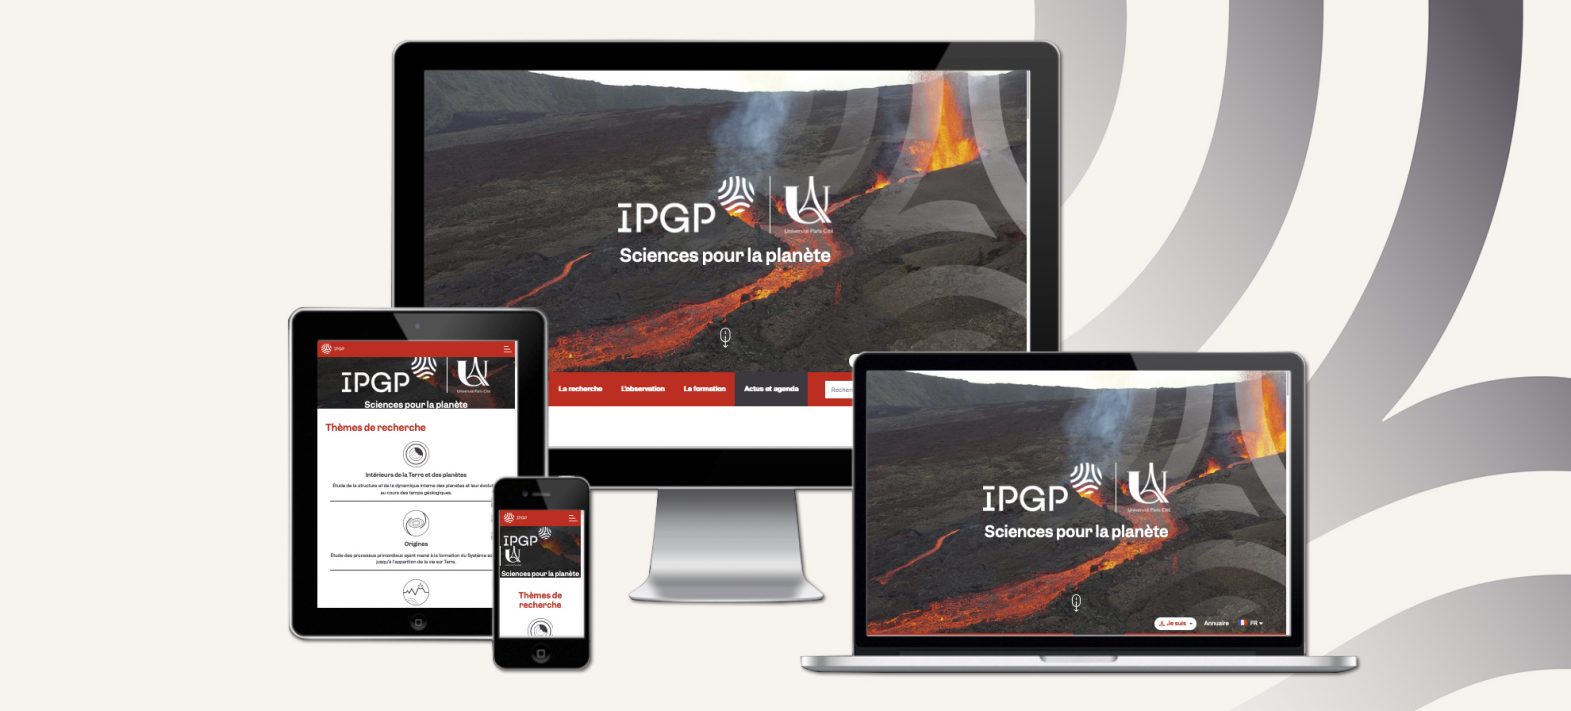 Le nouveau site internet de l’IPGP est en ligne !